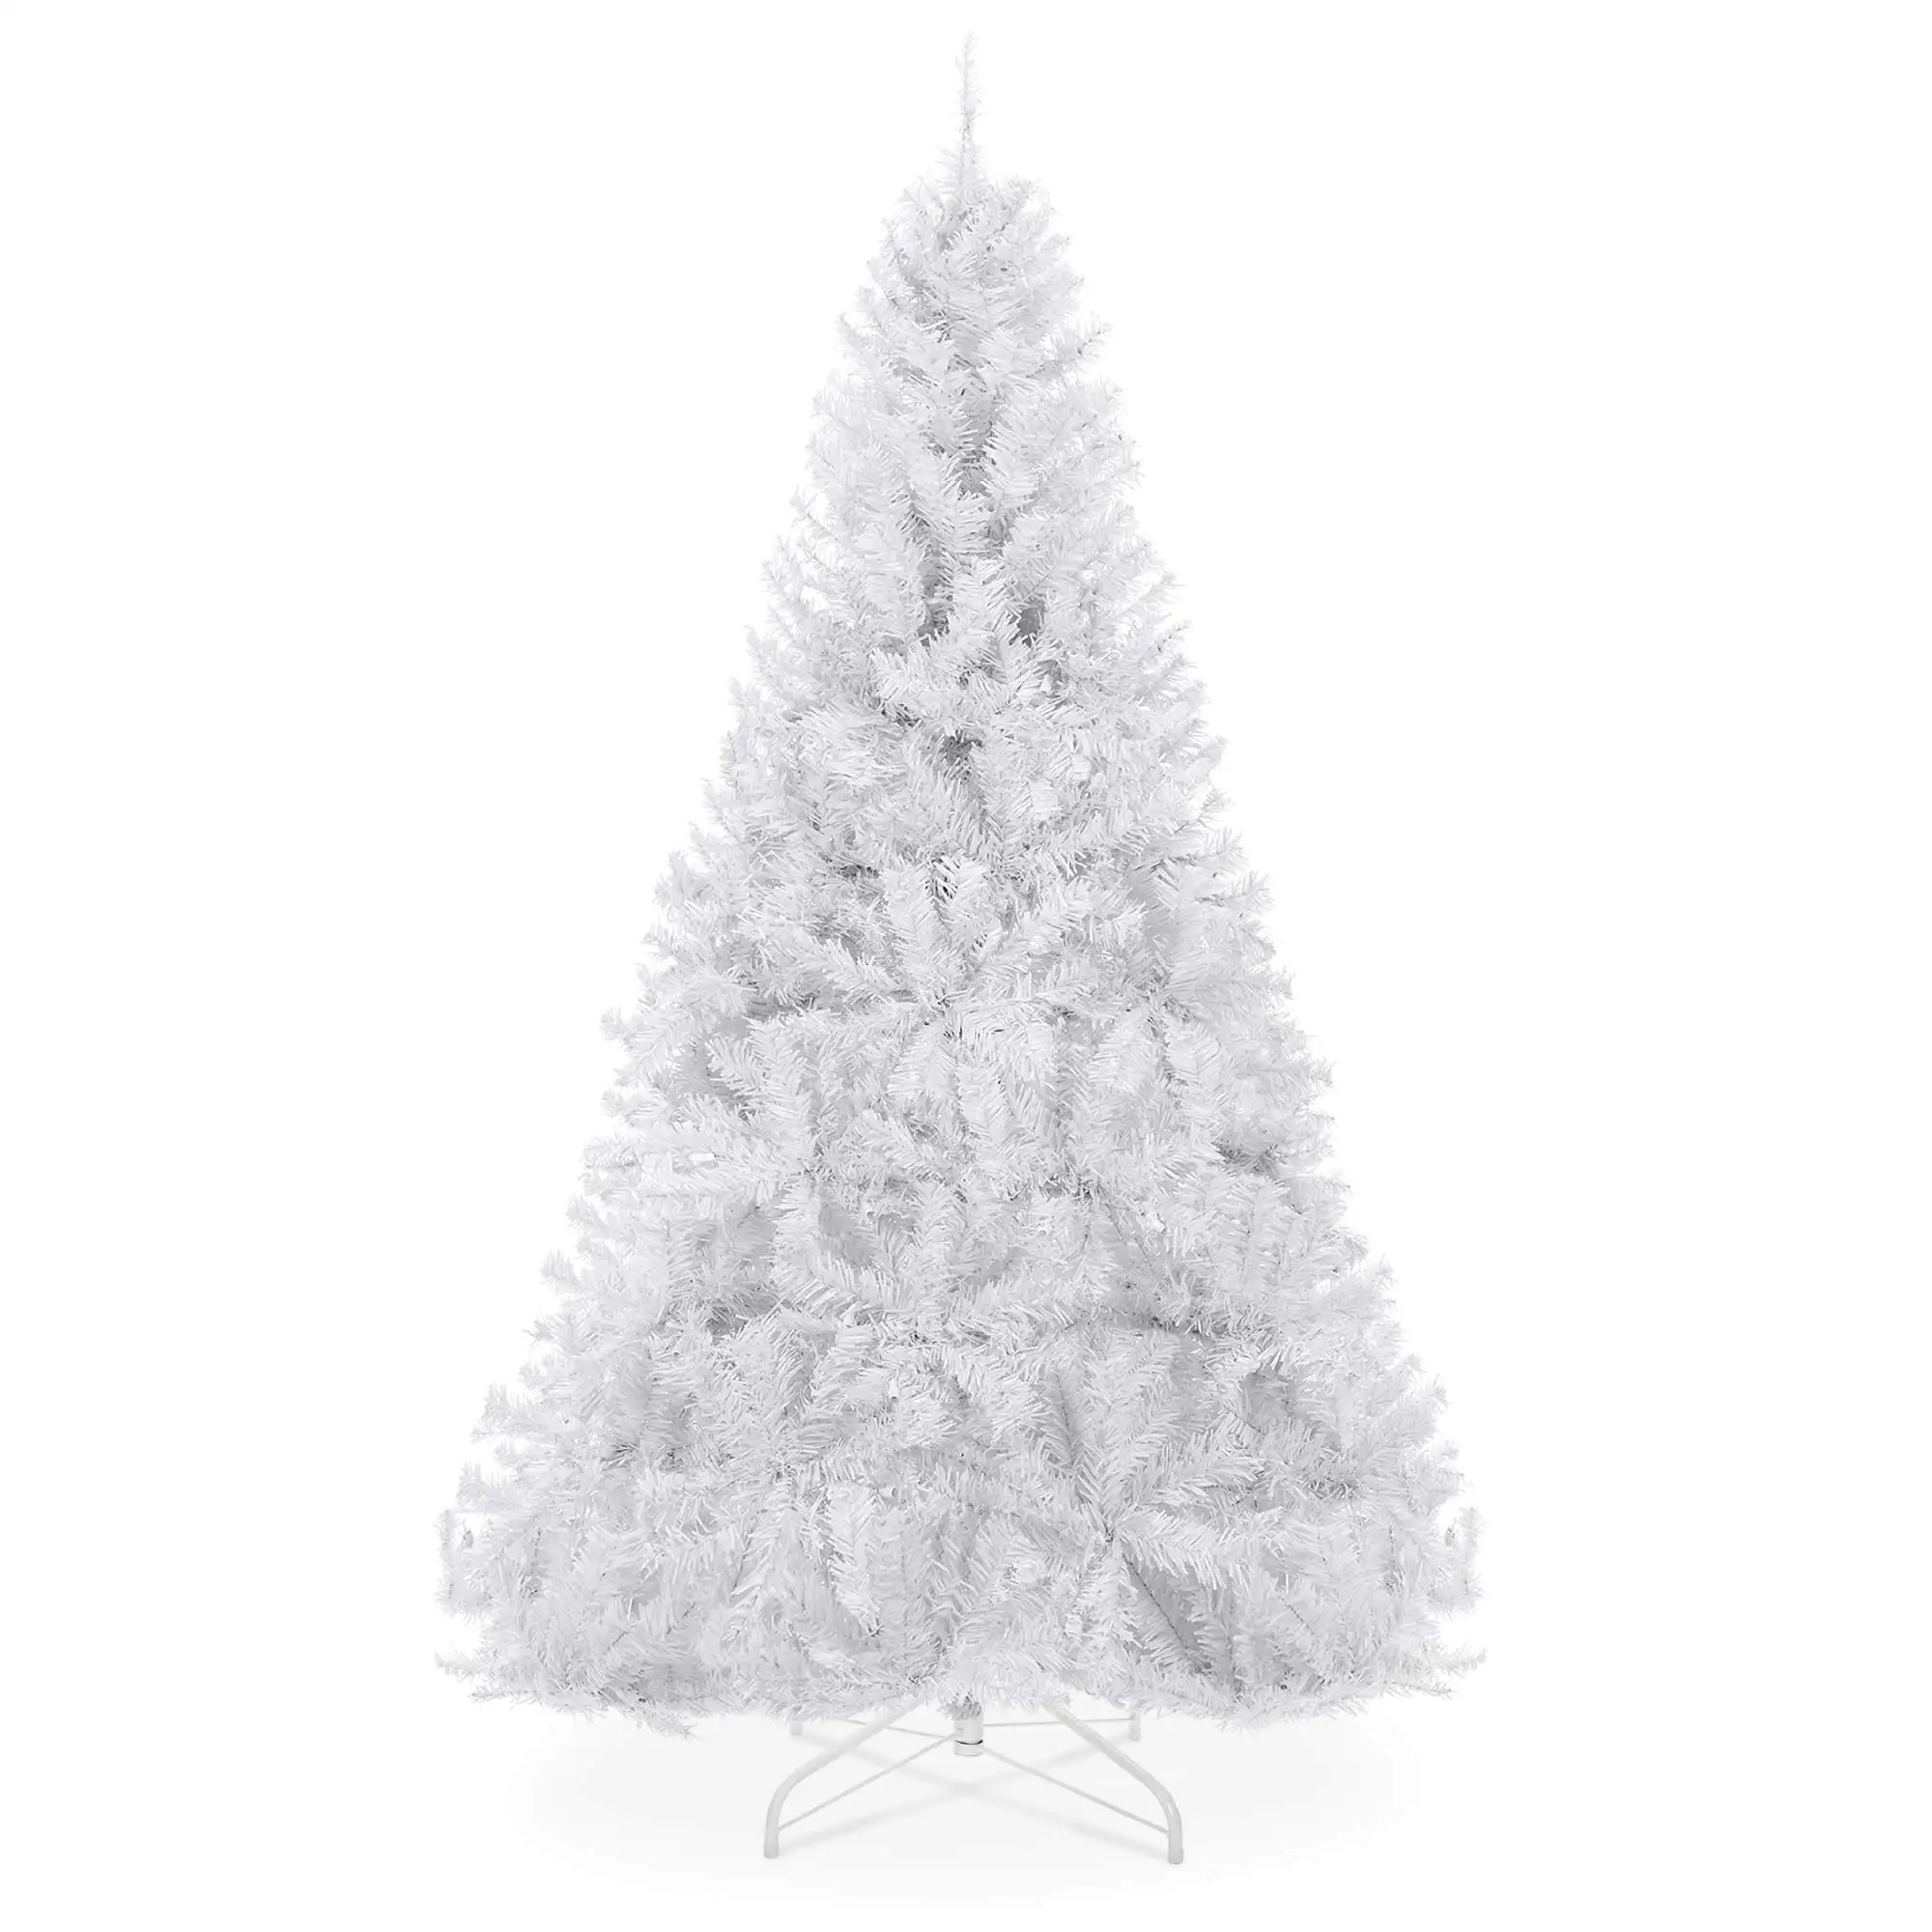 कस्टम आसान विधानसभा 6ft प्रीमियम Hinged कृत्रिम छुट्टी Arbol डे Navidad क्रिसमस पेड़ पाइन घर कार्यालय के लिए पार्टी सजावट